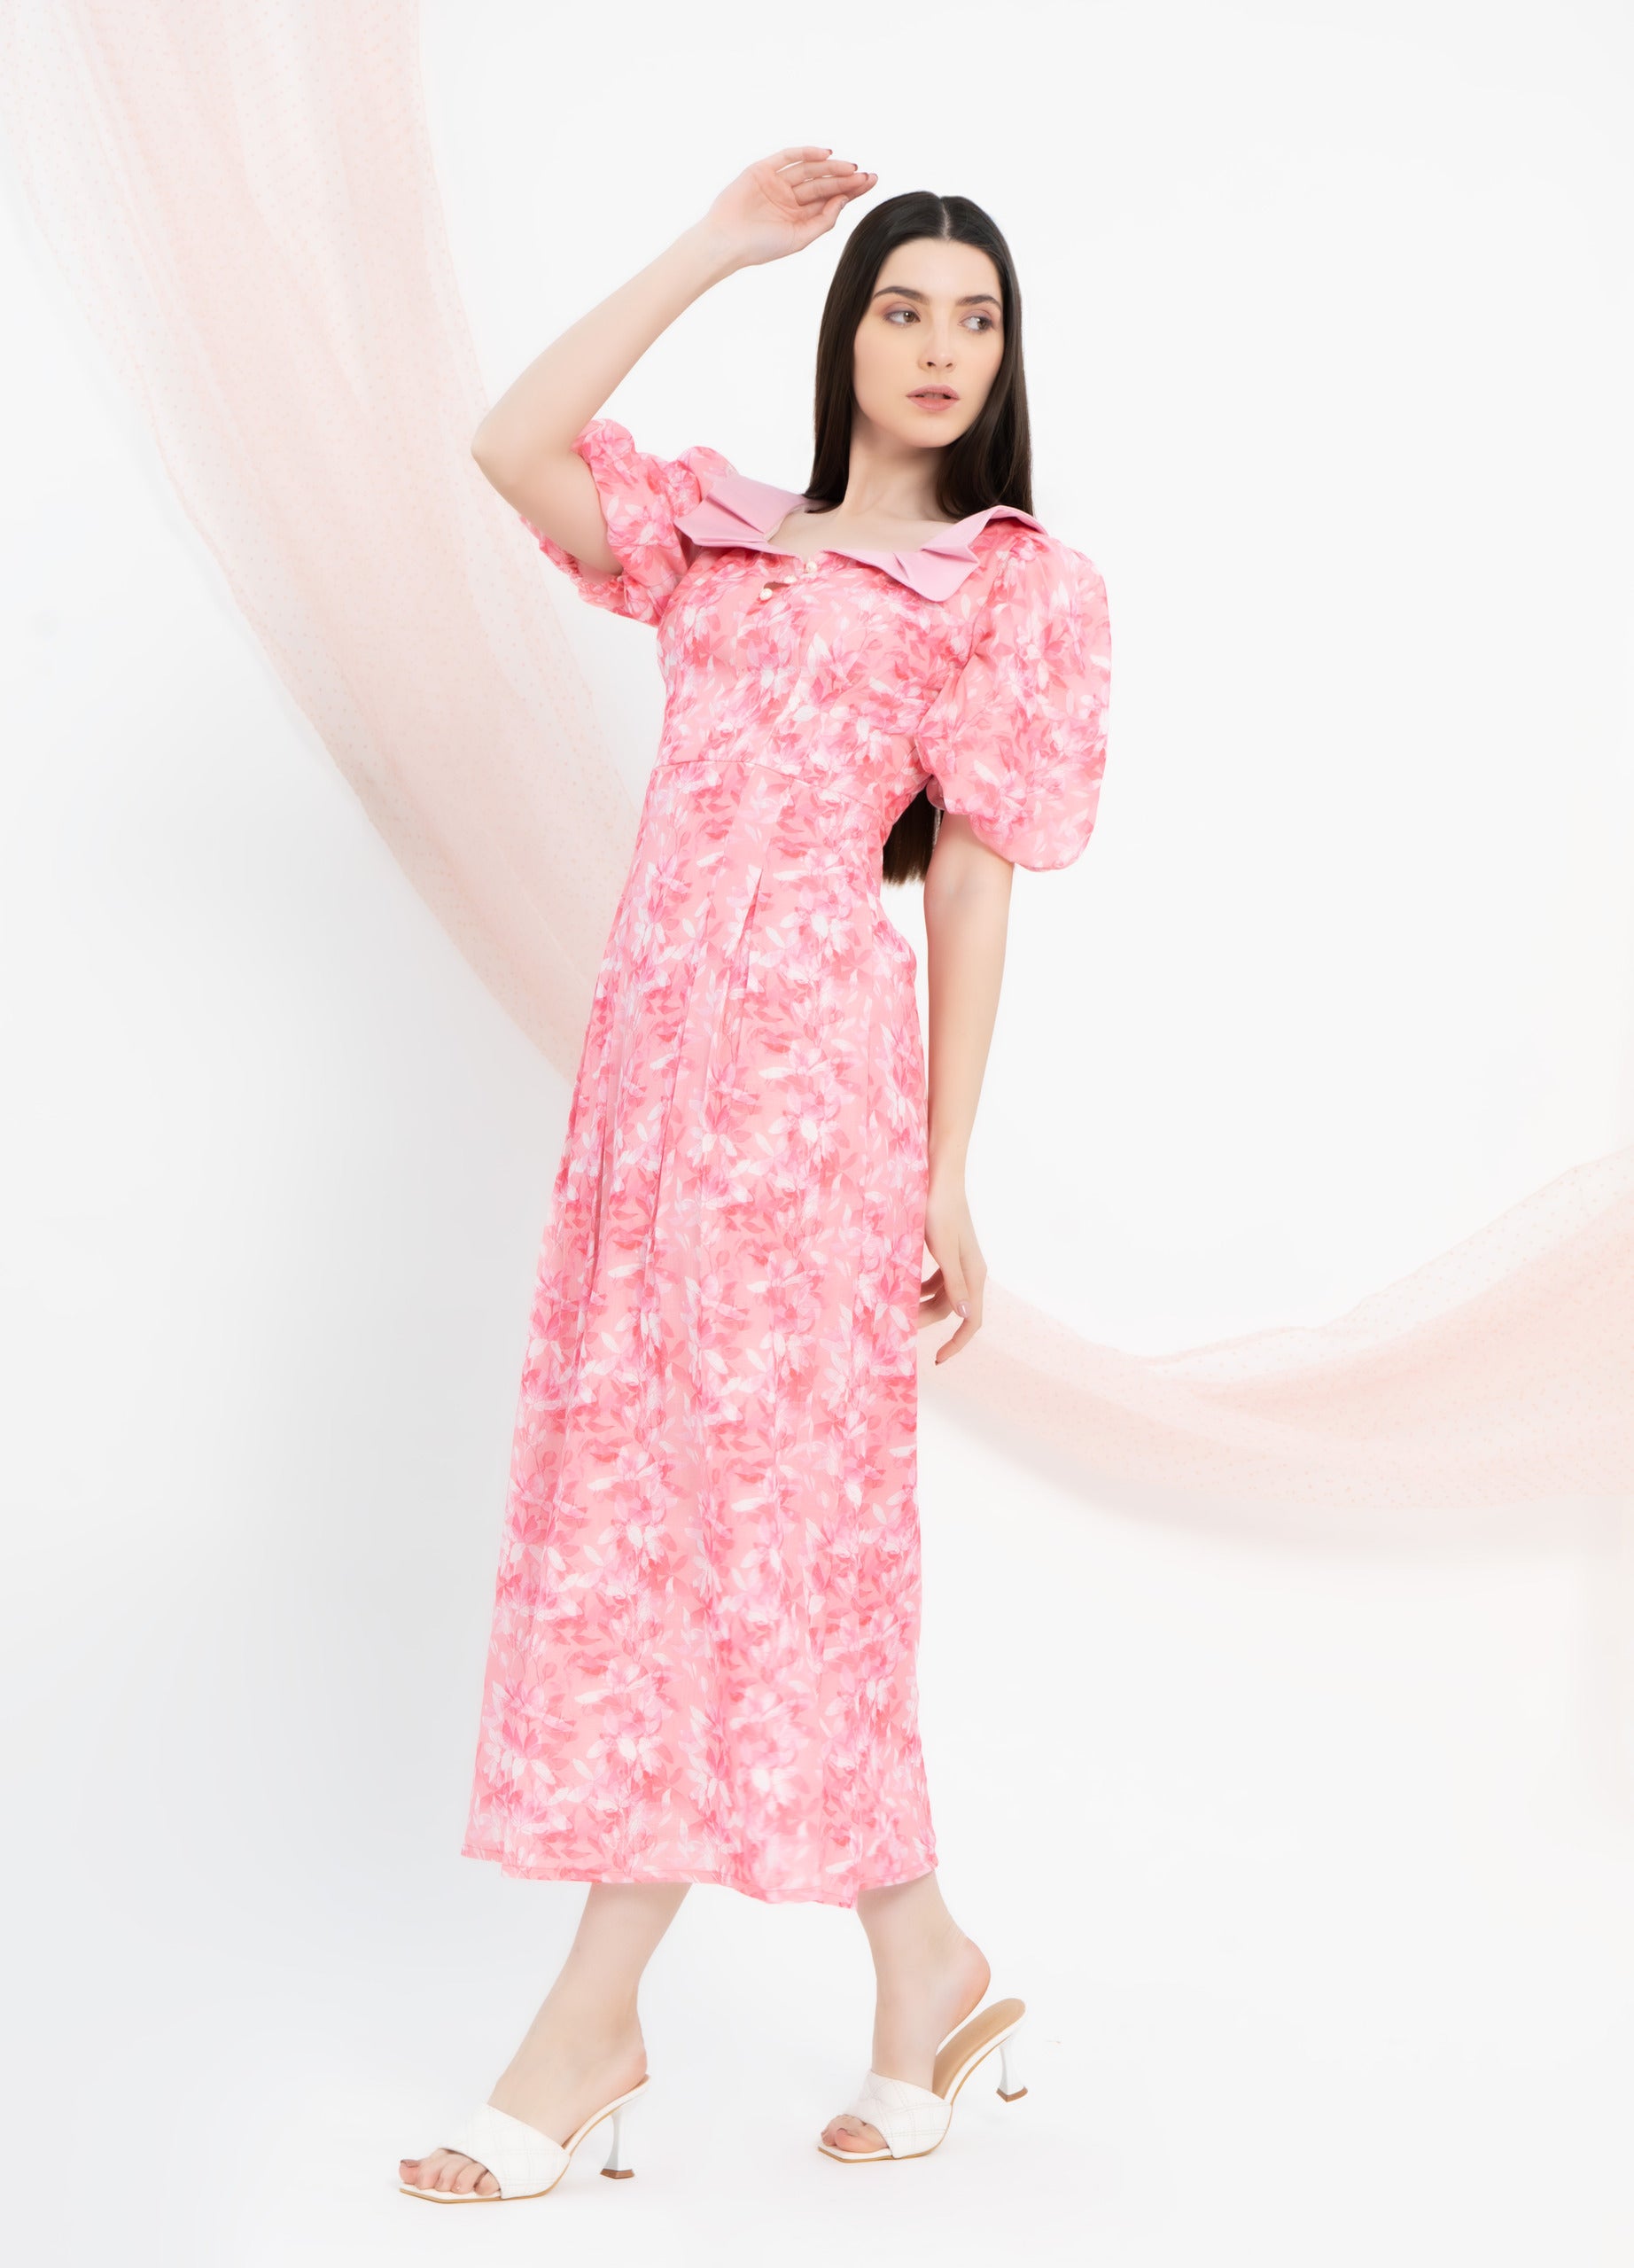 Fragrant floral dress